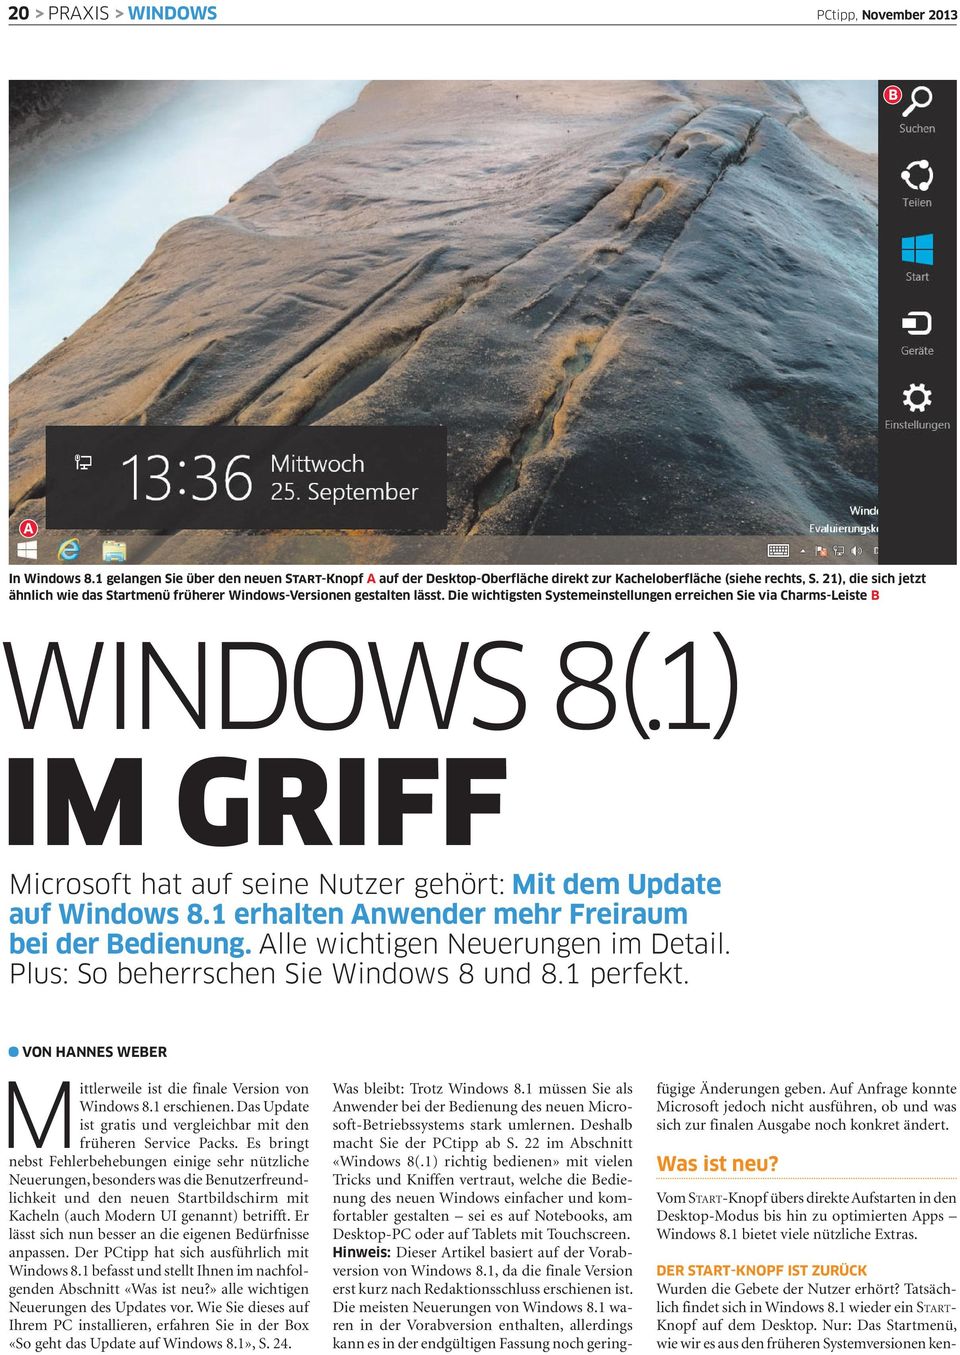 1) IM GRIFF Microsoft hat auf seine Nutzer gehört: Mit dem Update auf Windows 8.1 erhalten Anwender mehr Freiraum bei der Bedienung. Alle wichtigen Neuerungen im Detail.